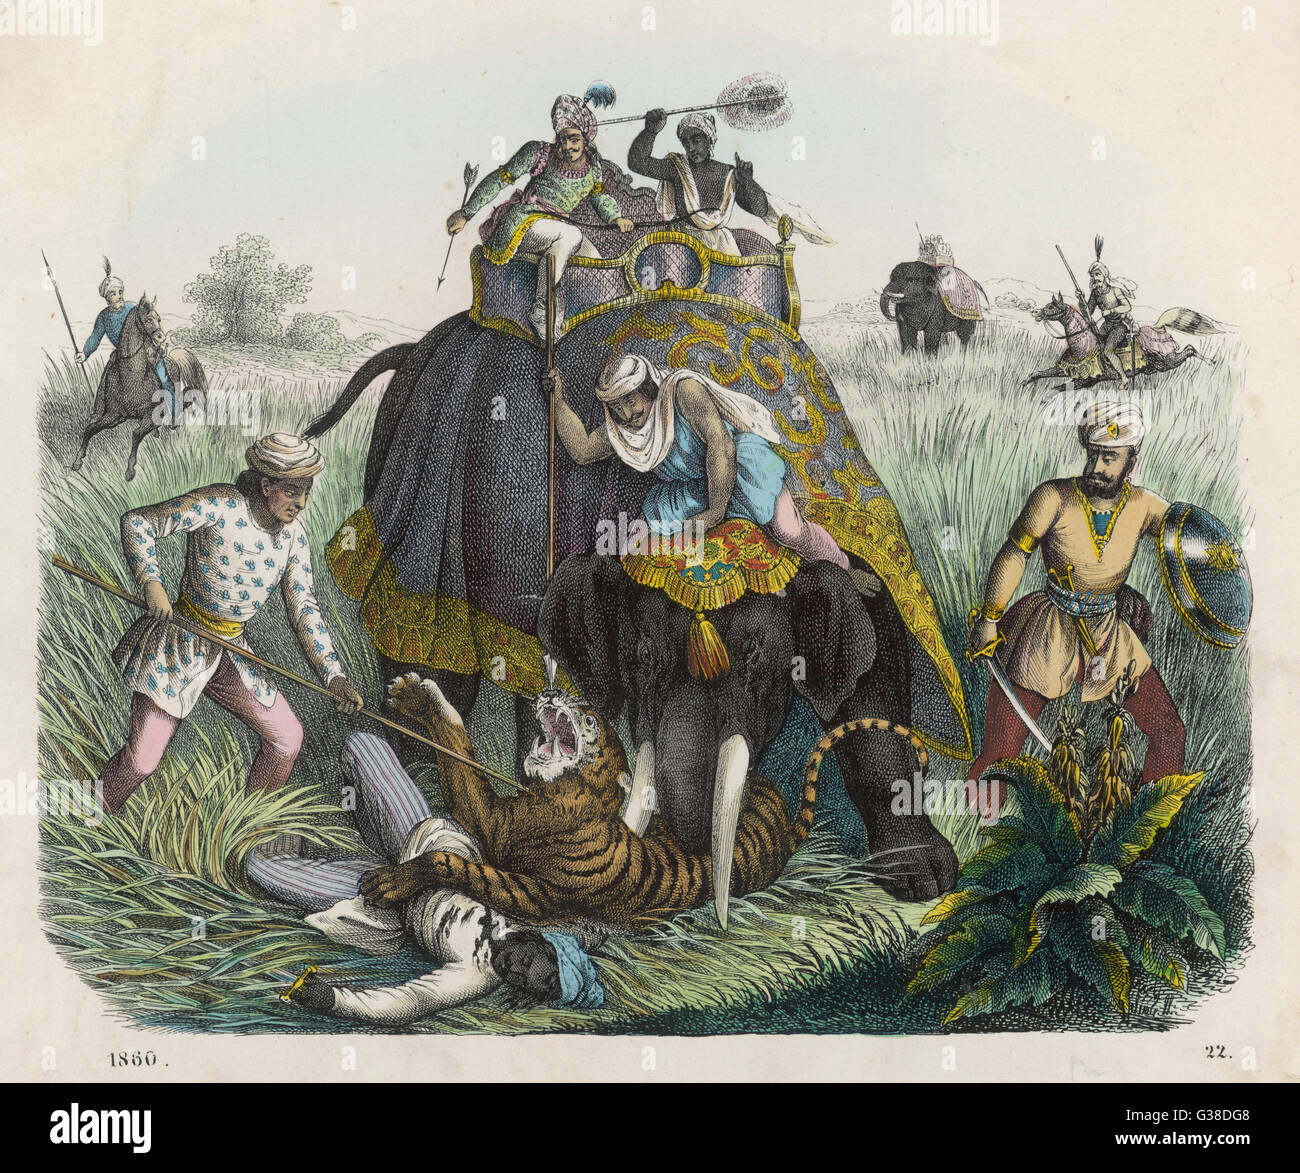 Der Höhepunkt einer Tigerjagd in Indien - Jäger zu Fuß oder auf Elefanten umgeben, die Tier und töten es Datum: 1860 Stockfoto